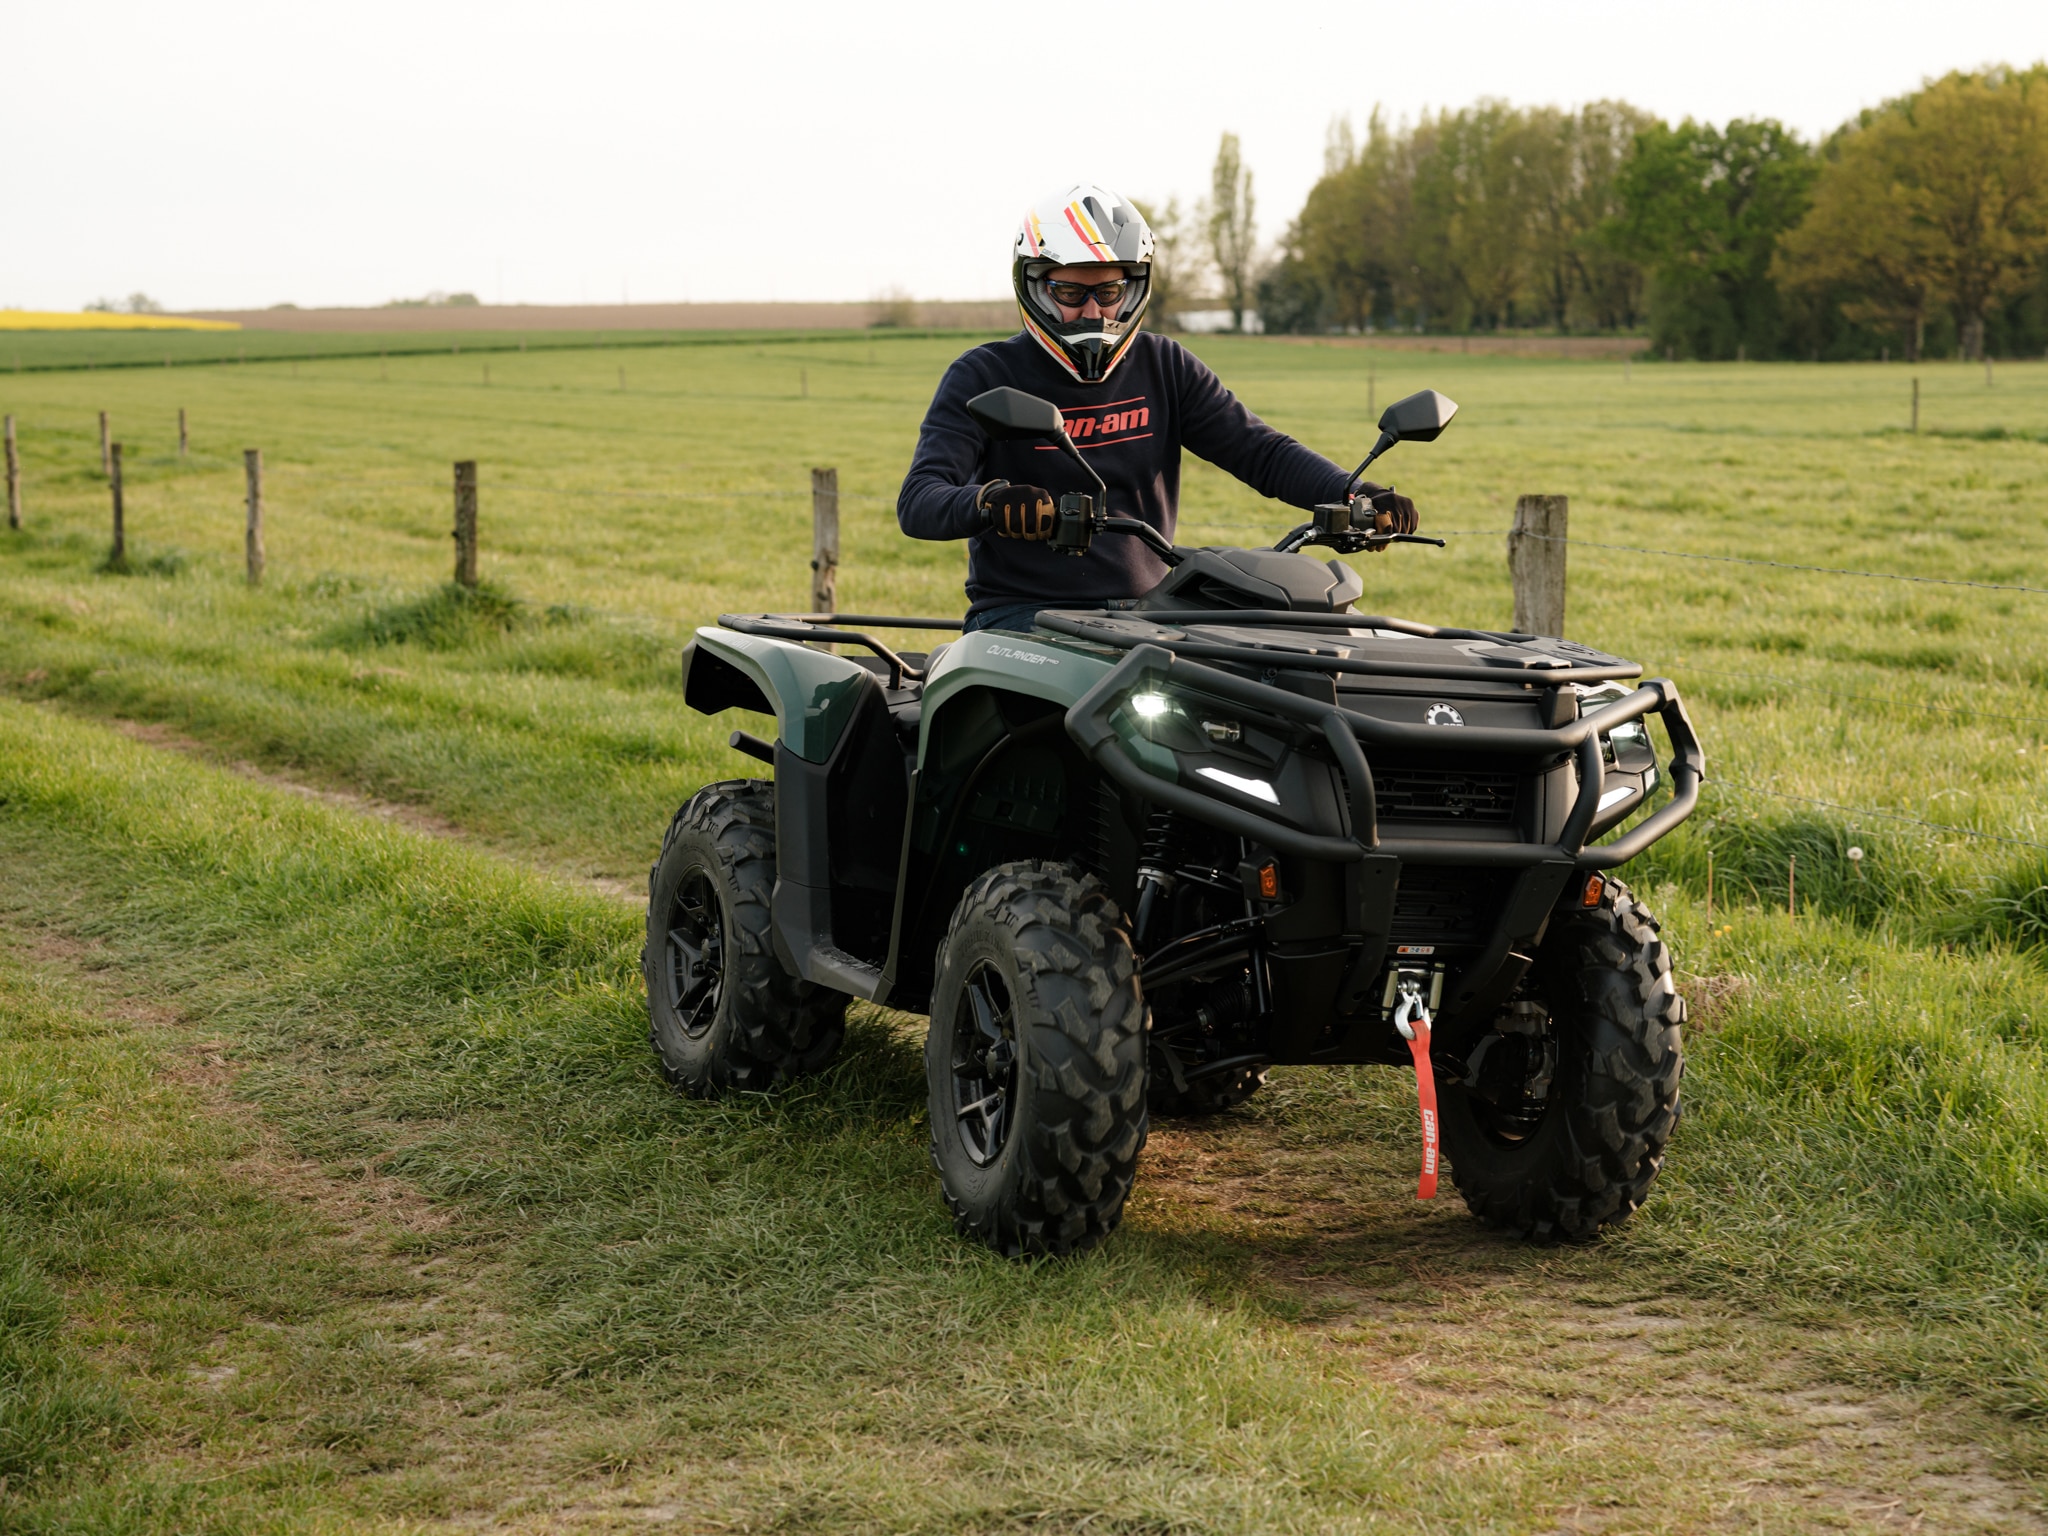 Förare kör Can-Am ATV på en terrängled